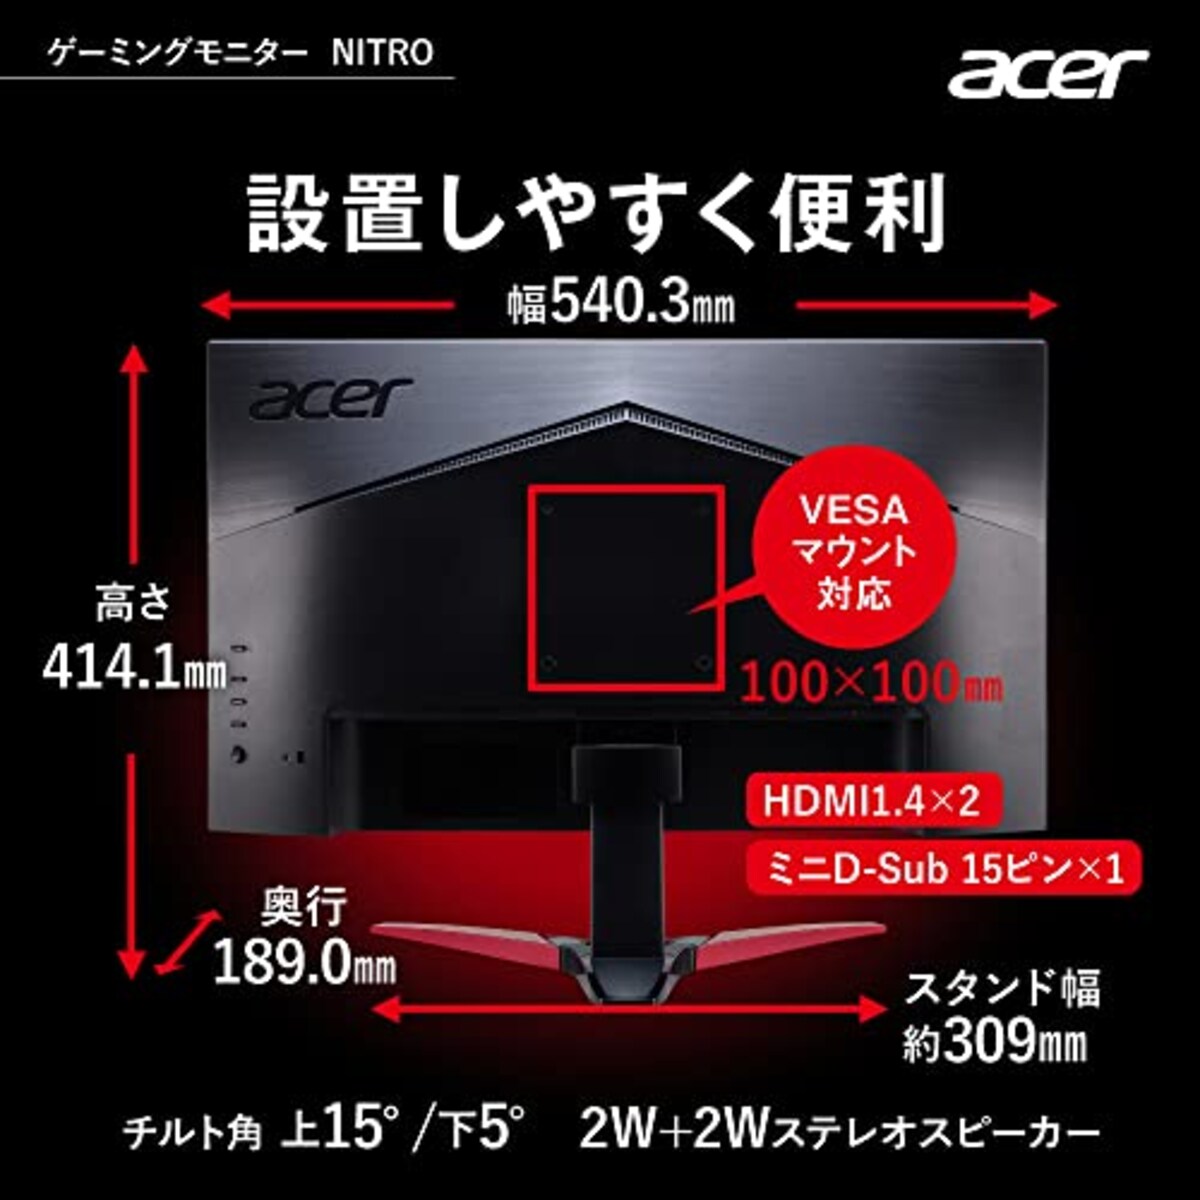  日本エイサー 【Amazon.co.jp限定】 Acer ゲーミングモニター Nitro KG241YHbmiix 23.8インチ VA 非光沢 フルHD 100Hz 1ms(VRB) HDMI ミニD-Sub15 VESAマウント対応 スピーカー内蔵 ヘッドホン端子 AMD FreeSync画像7 